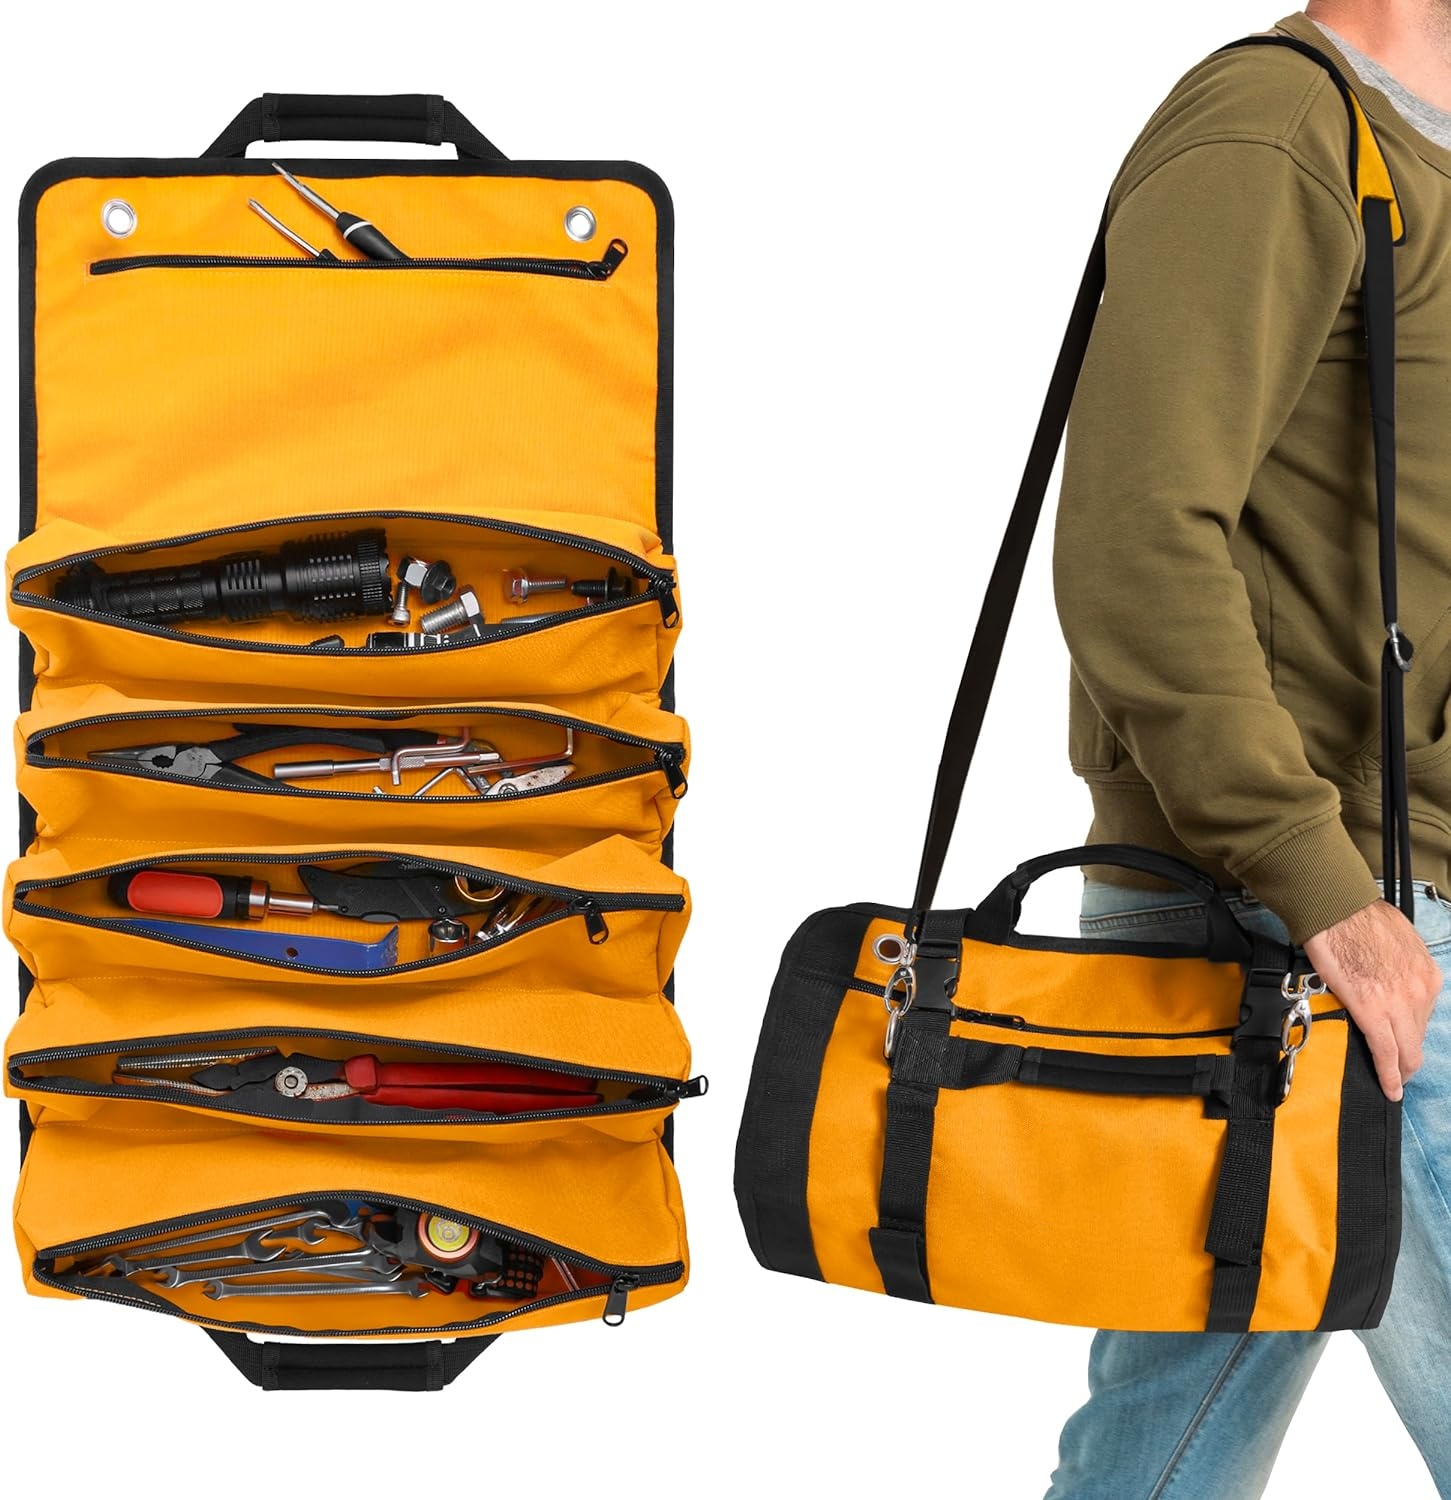 Organizador de bolsa enrollable para herramientas de alta resistencia: bolsa enrollable para herramientas de viaje con 6 bolsas organizadoras con cremallera